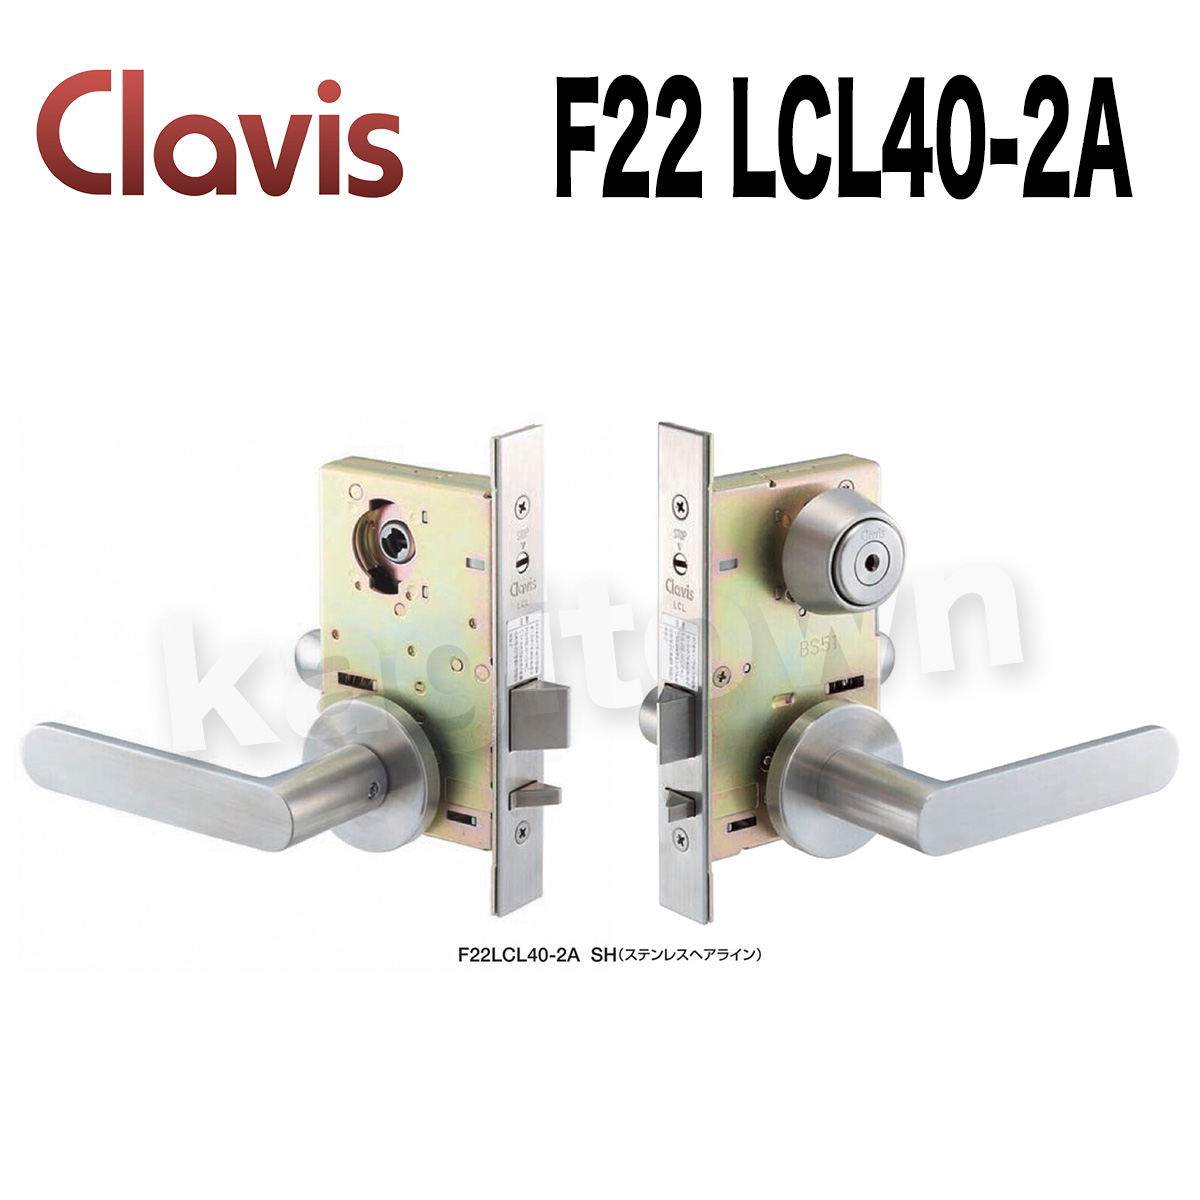 Clavis F22 LCL40-2A【クラビス】レバーハンドル錠 納期1~3週間